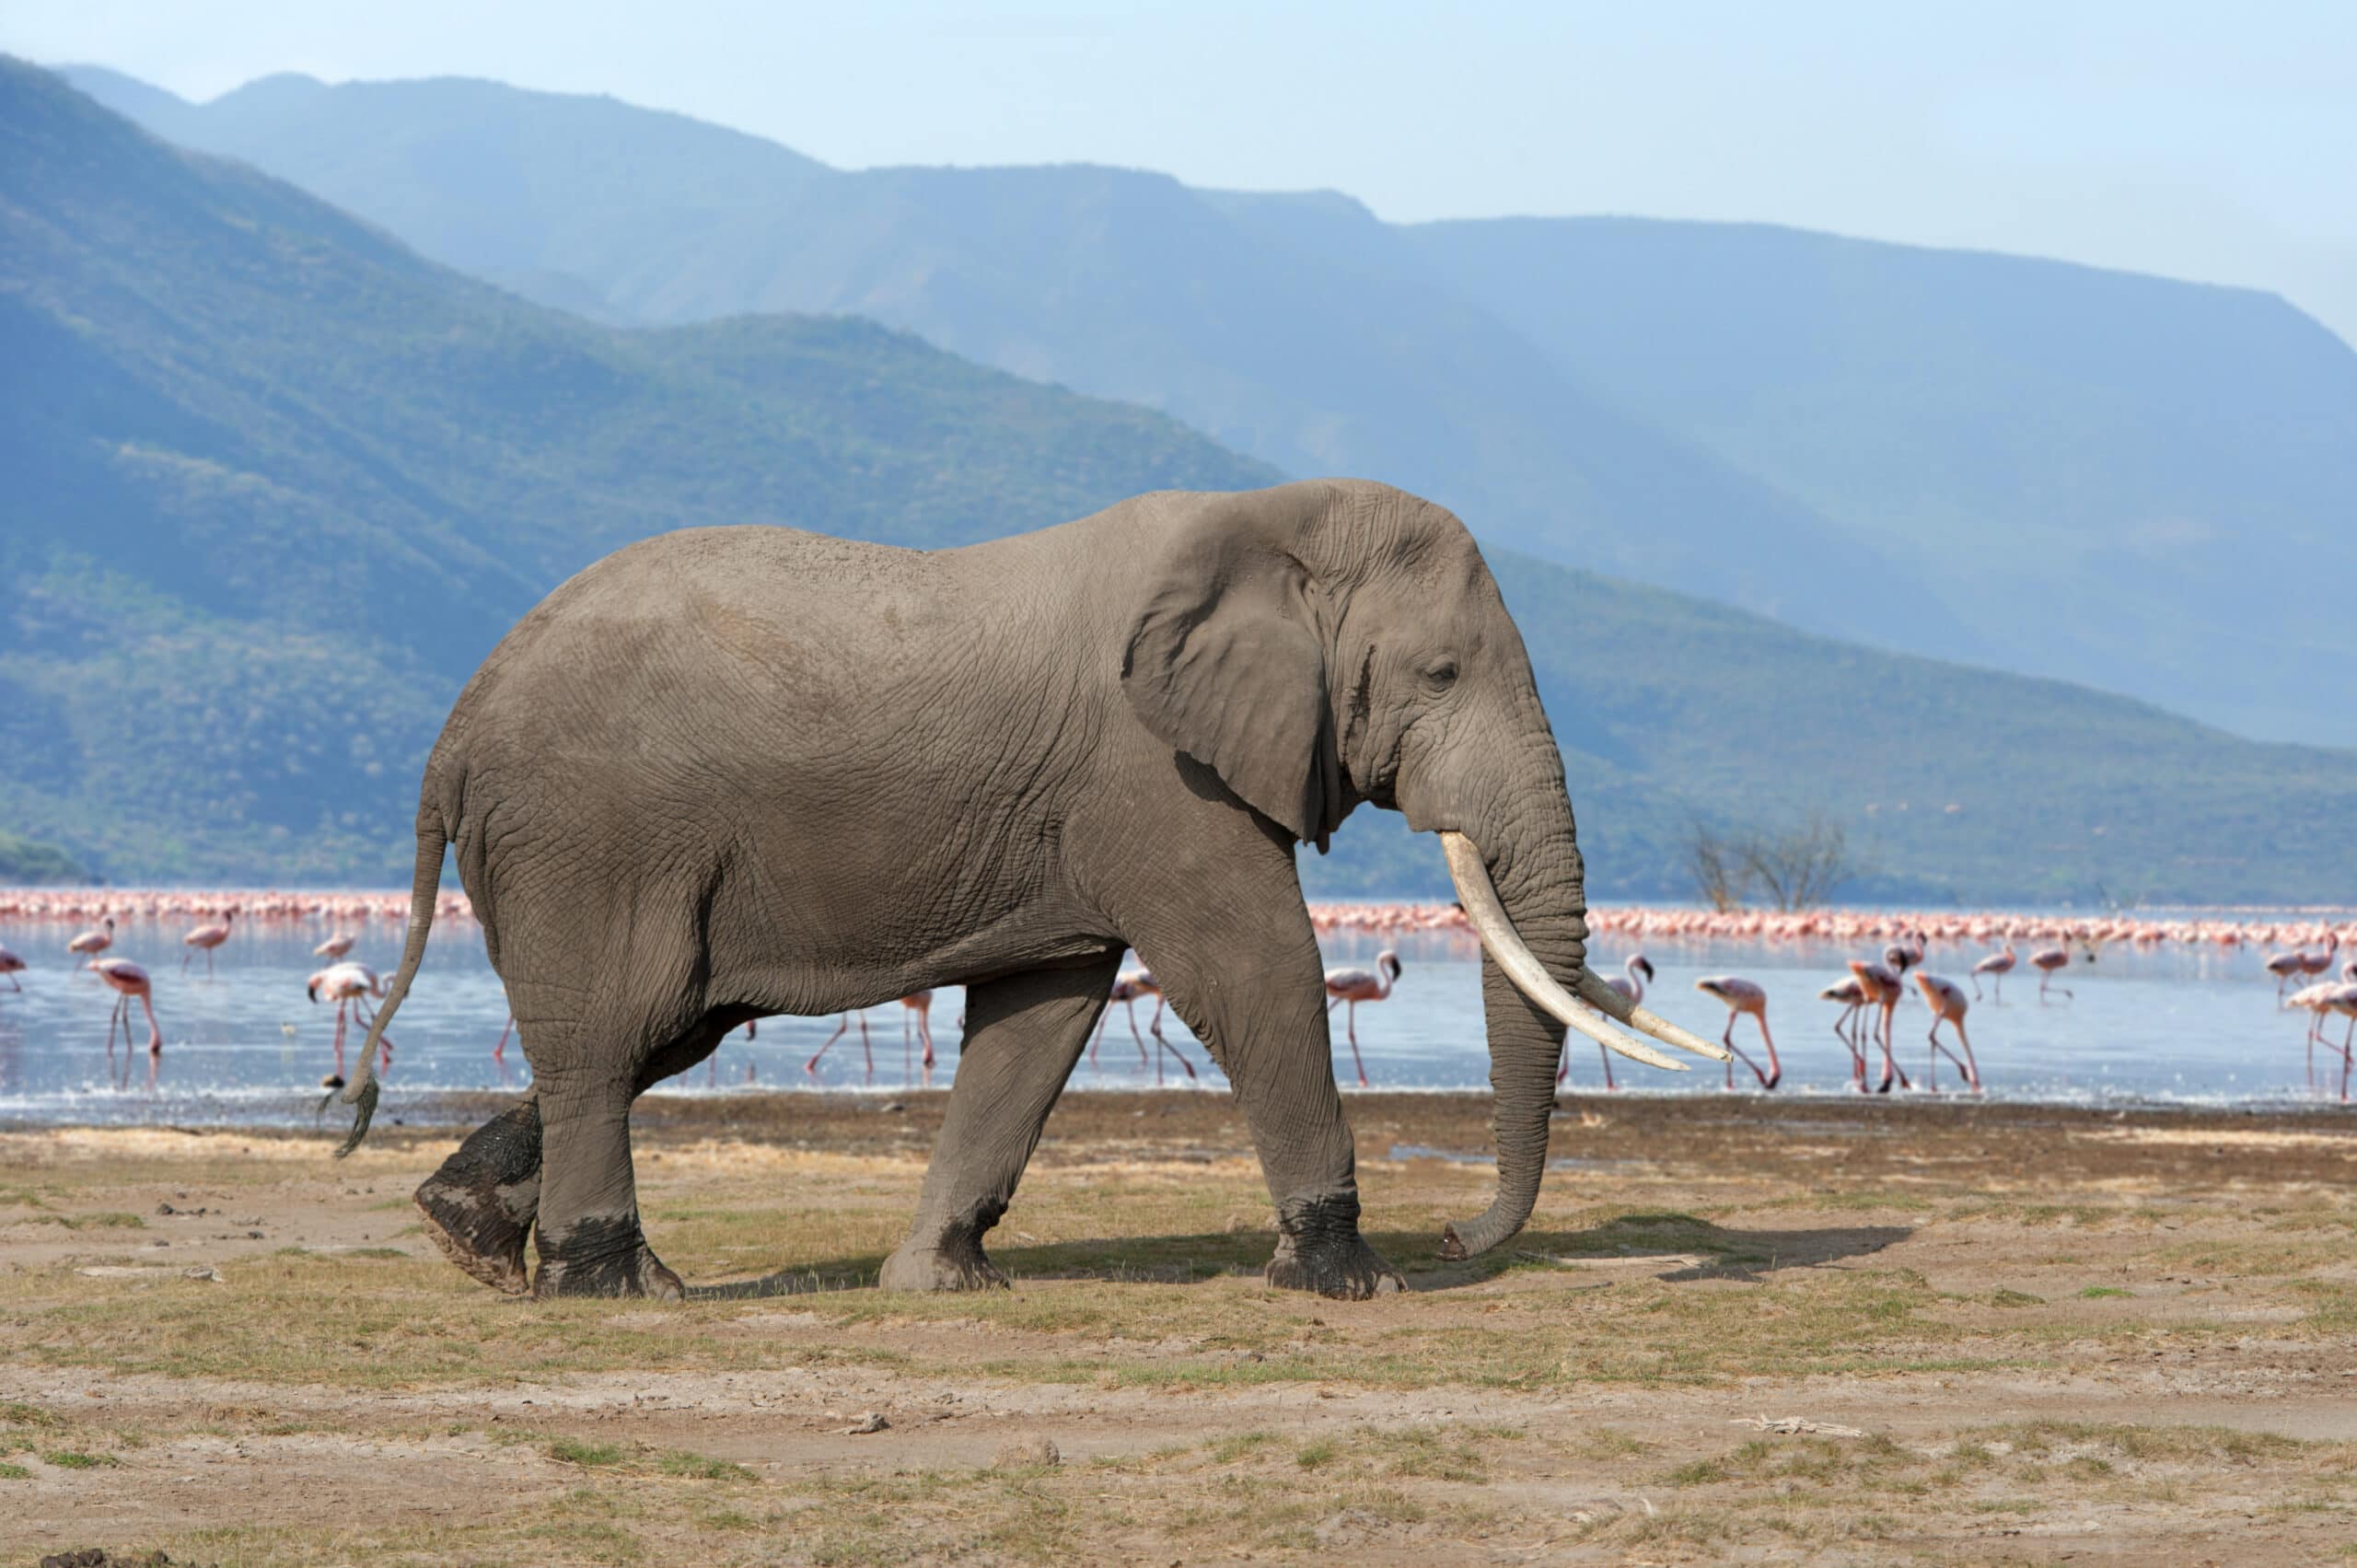 elephant in national park of kenya 2021 08 26 15 56 05 utc scaled